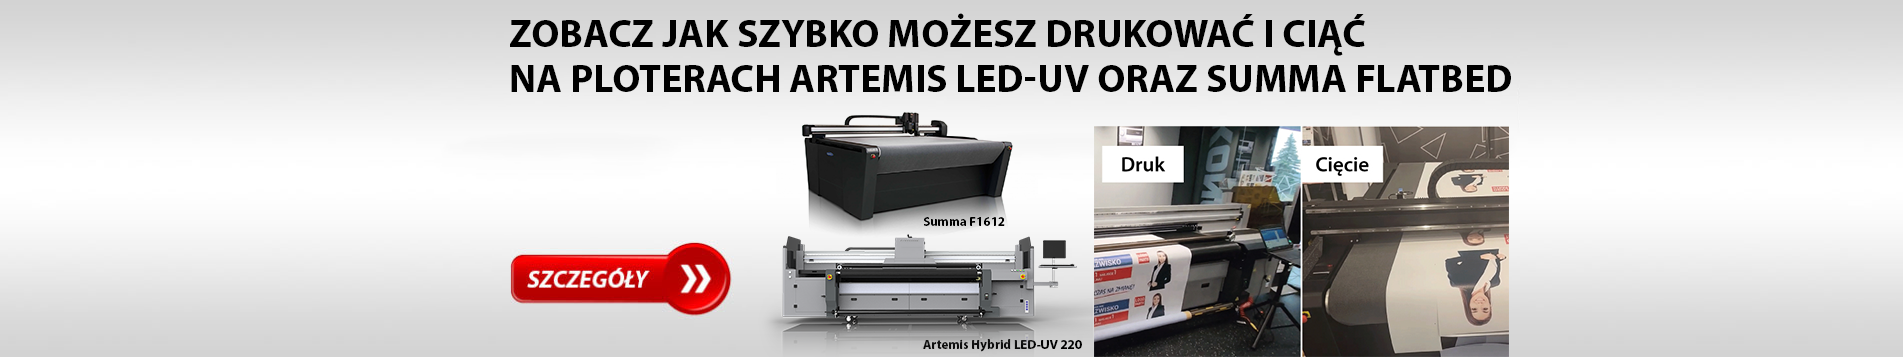 Zobacz jak szybko możesz drukować i ciąć na ploterach Artemis LED-UV oraz Summa Flatbed